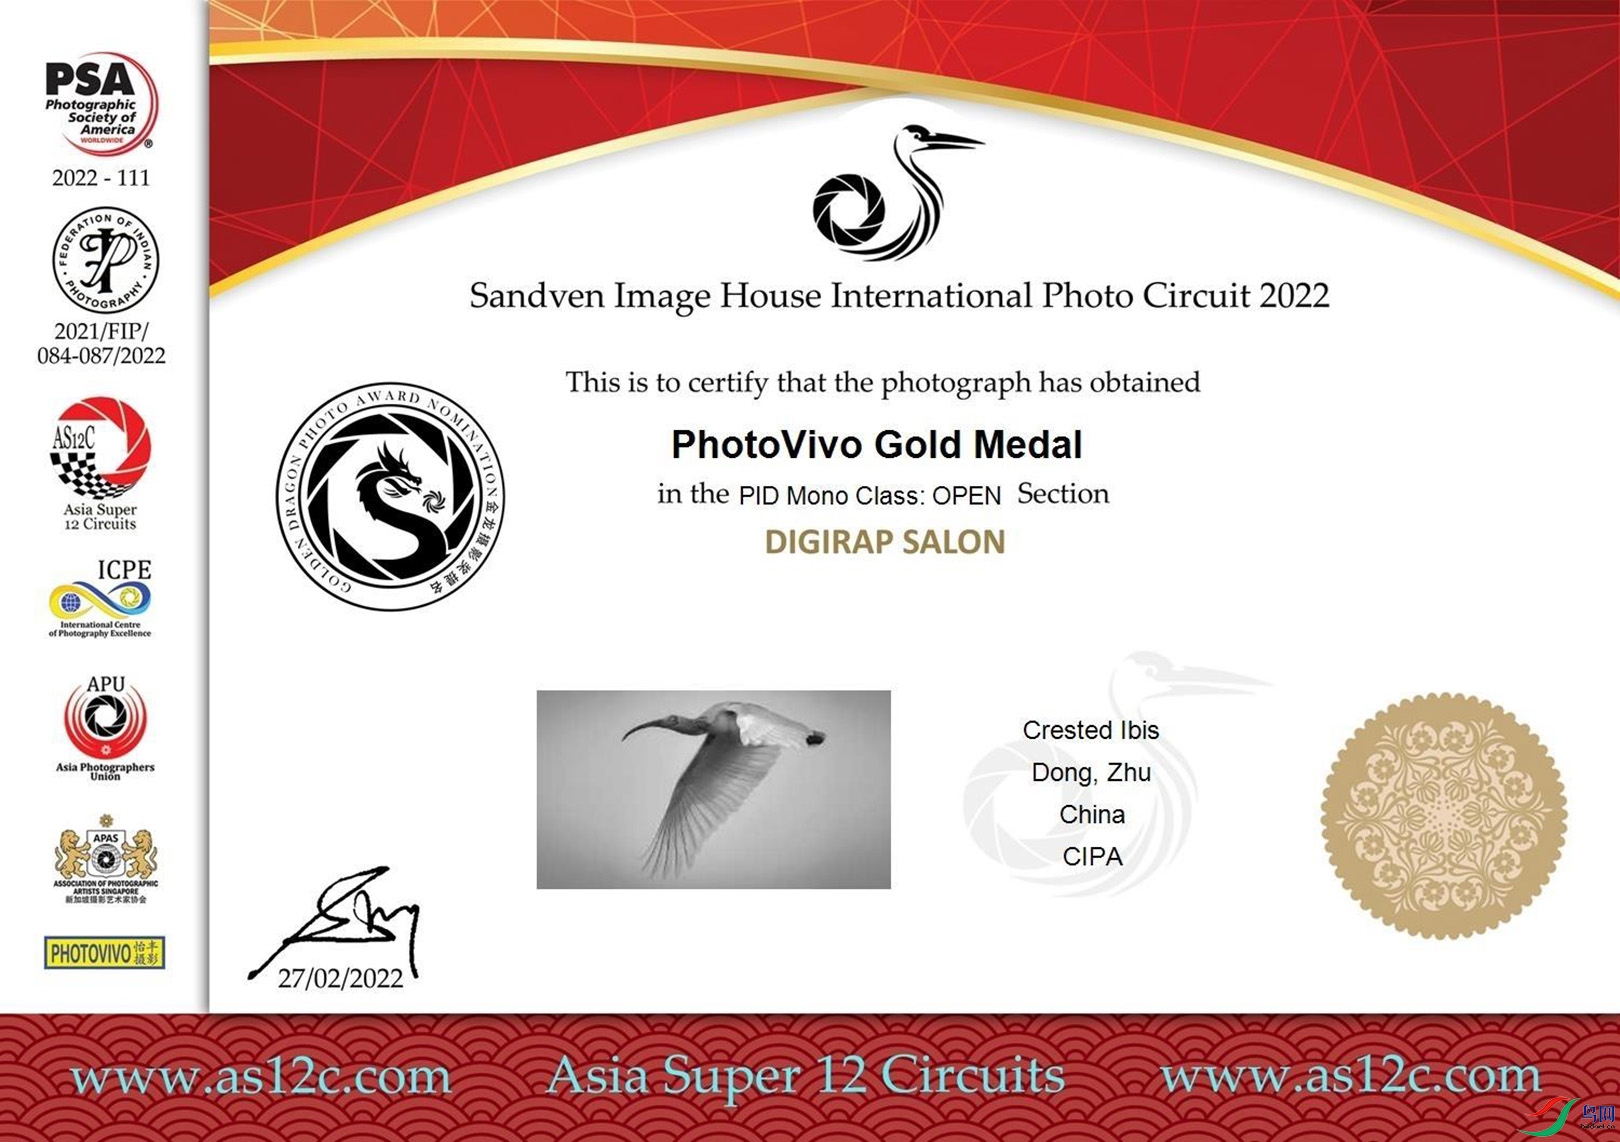 2.作品《Crested Ibis》获得2022新加坡昇丰影室国际摄影沙龙巡回赛PhotoVivo Gold Medal金牌奖.jpg